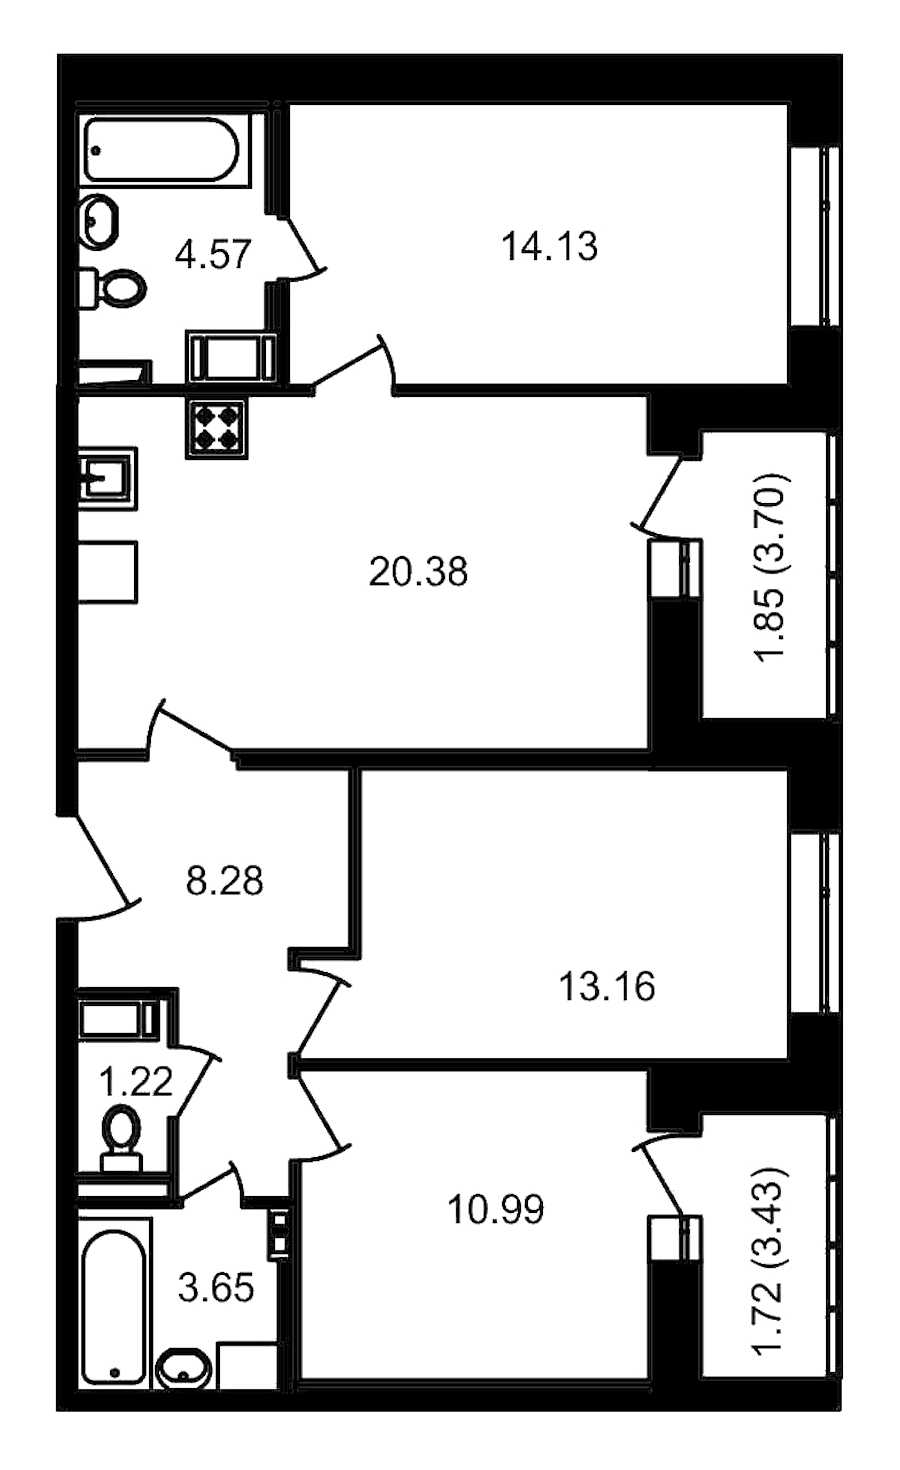 Трехкомнатная квартира в ЦДС: площадь 83.51 м2 , этаж: 17 – купить в Санкт-Петербурге